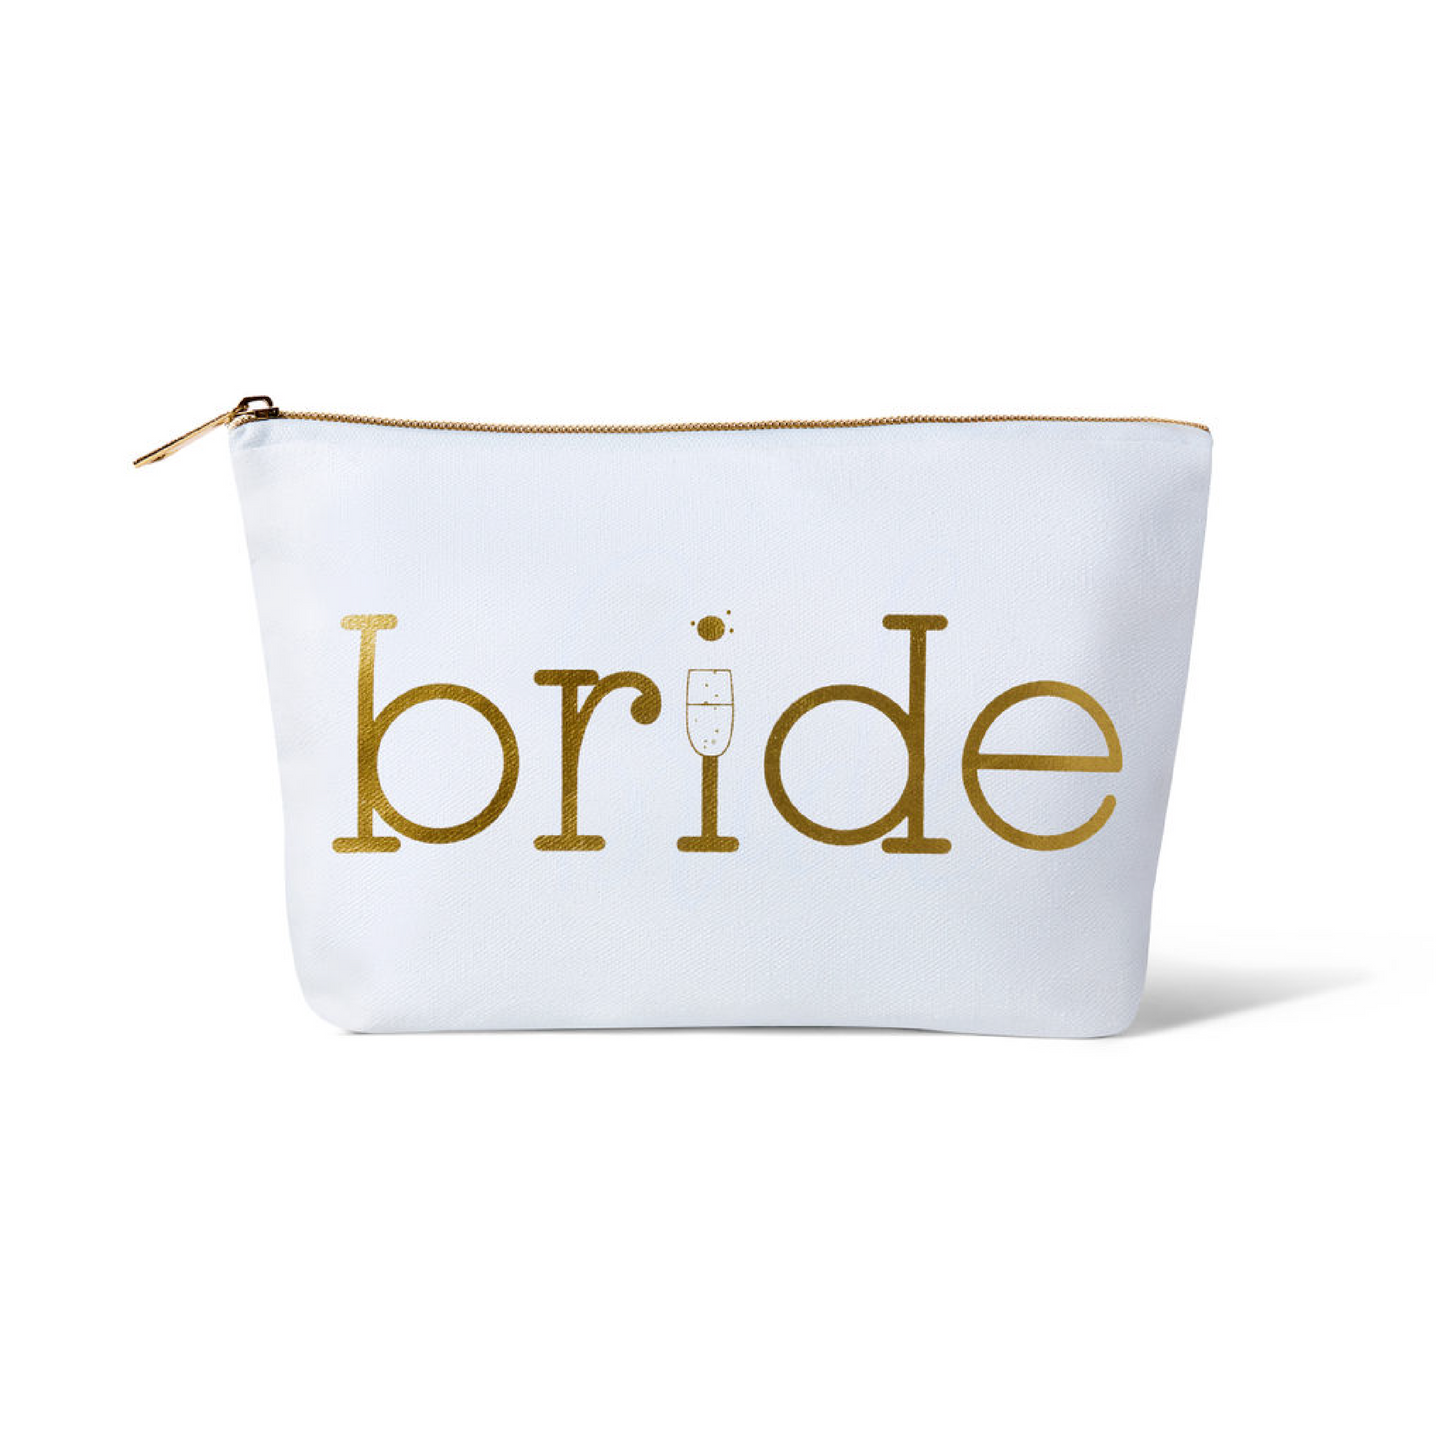 Bride Canvas Makeup Bag - Diamond Logo